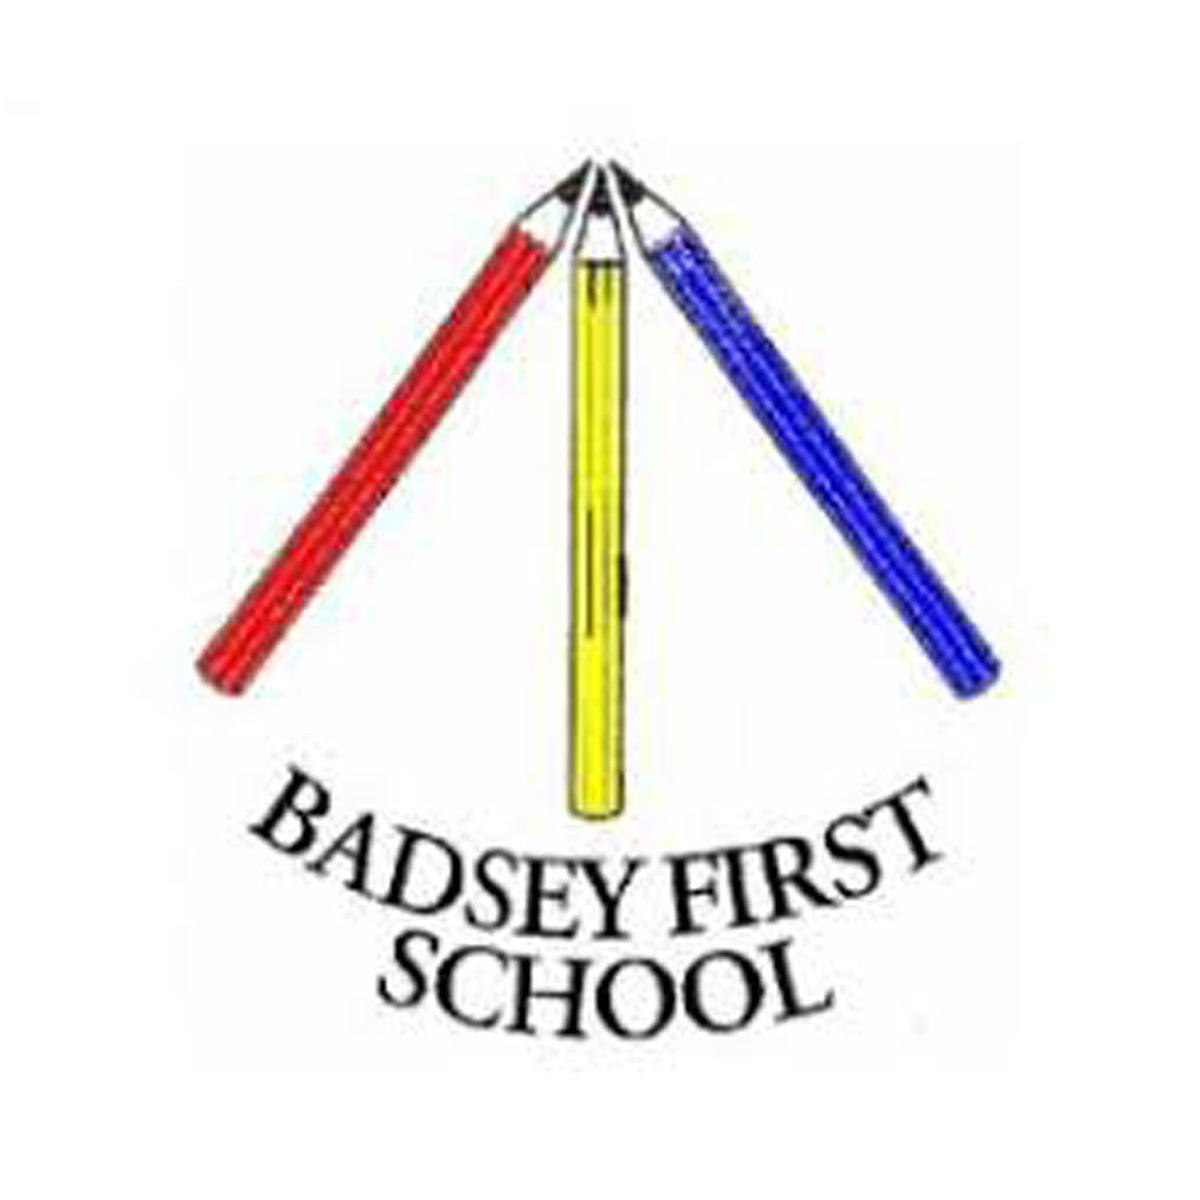 Badsey First School